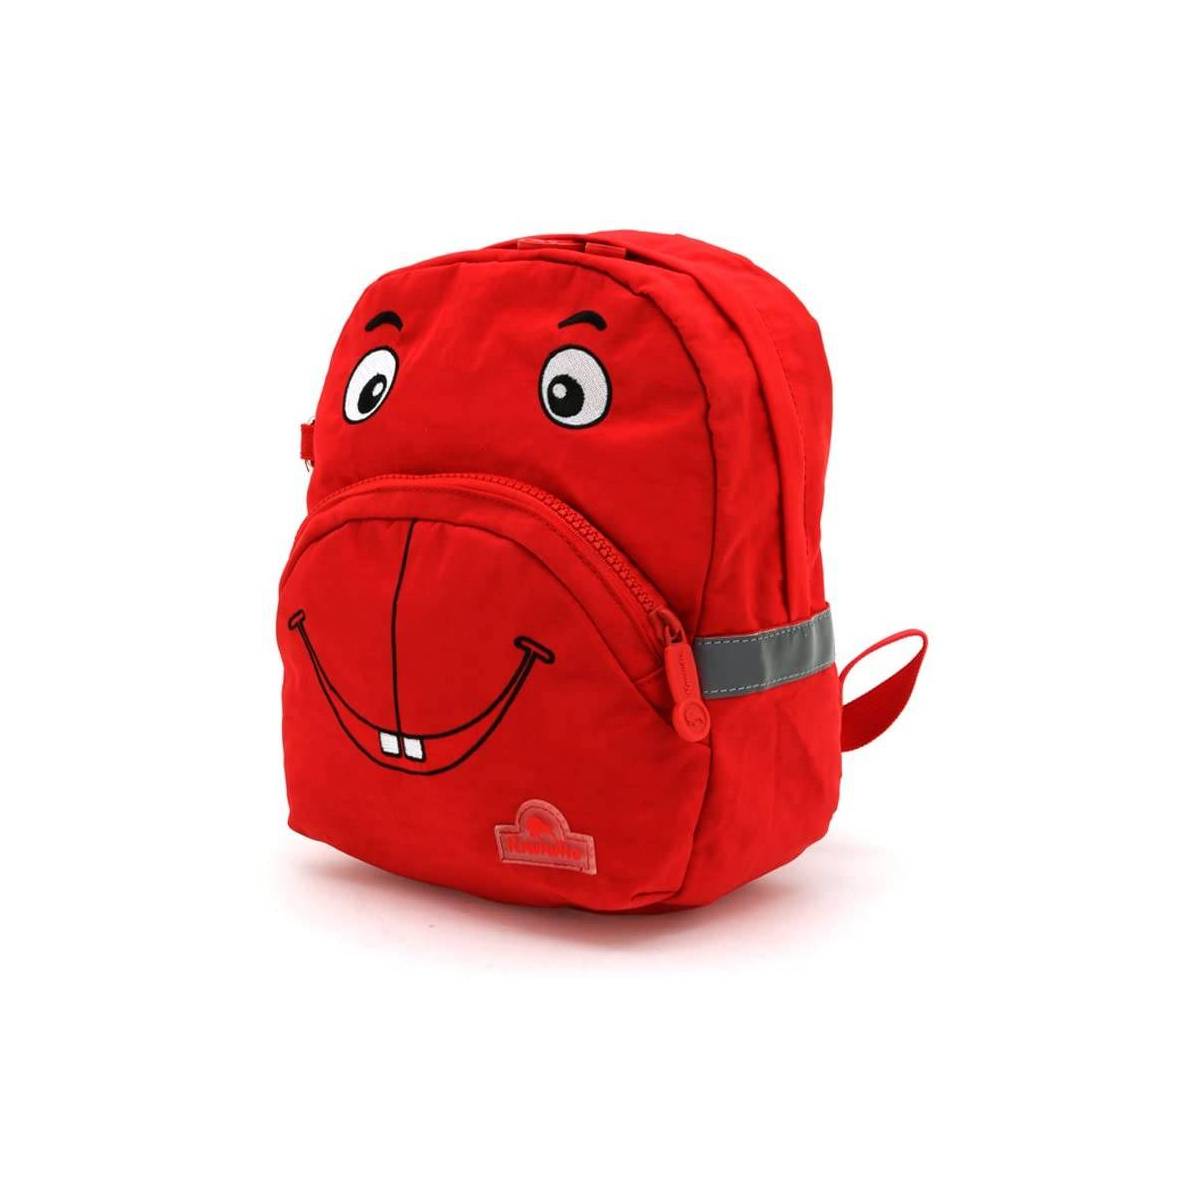 Kiwiwho Backpack 3 years+ Red